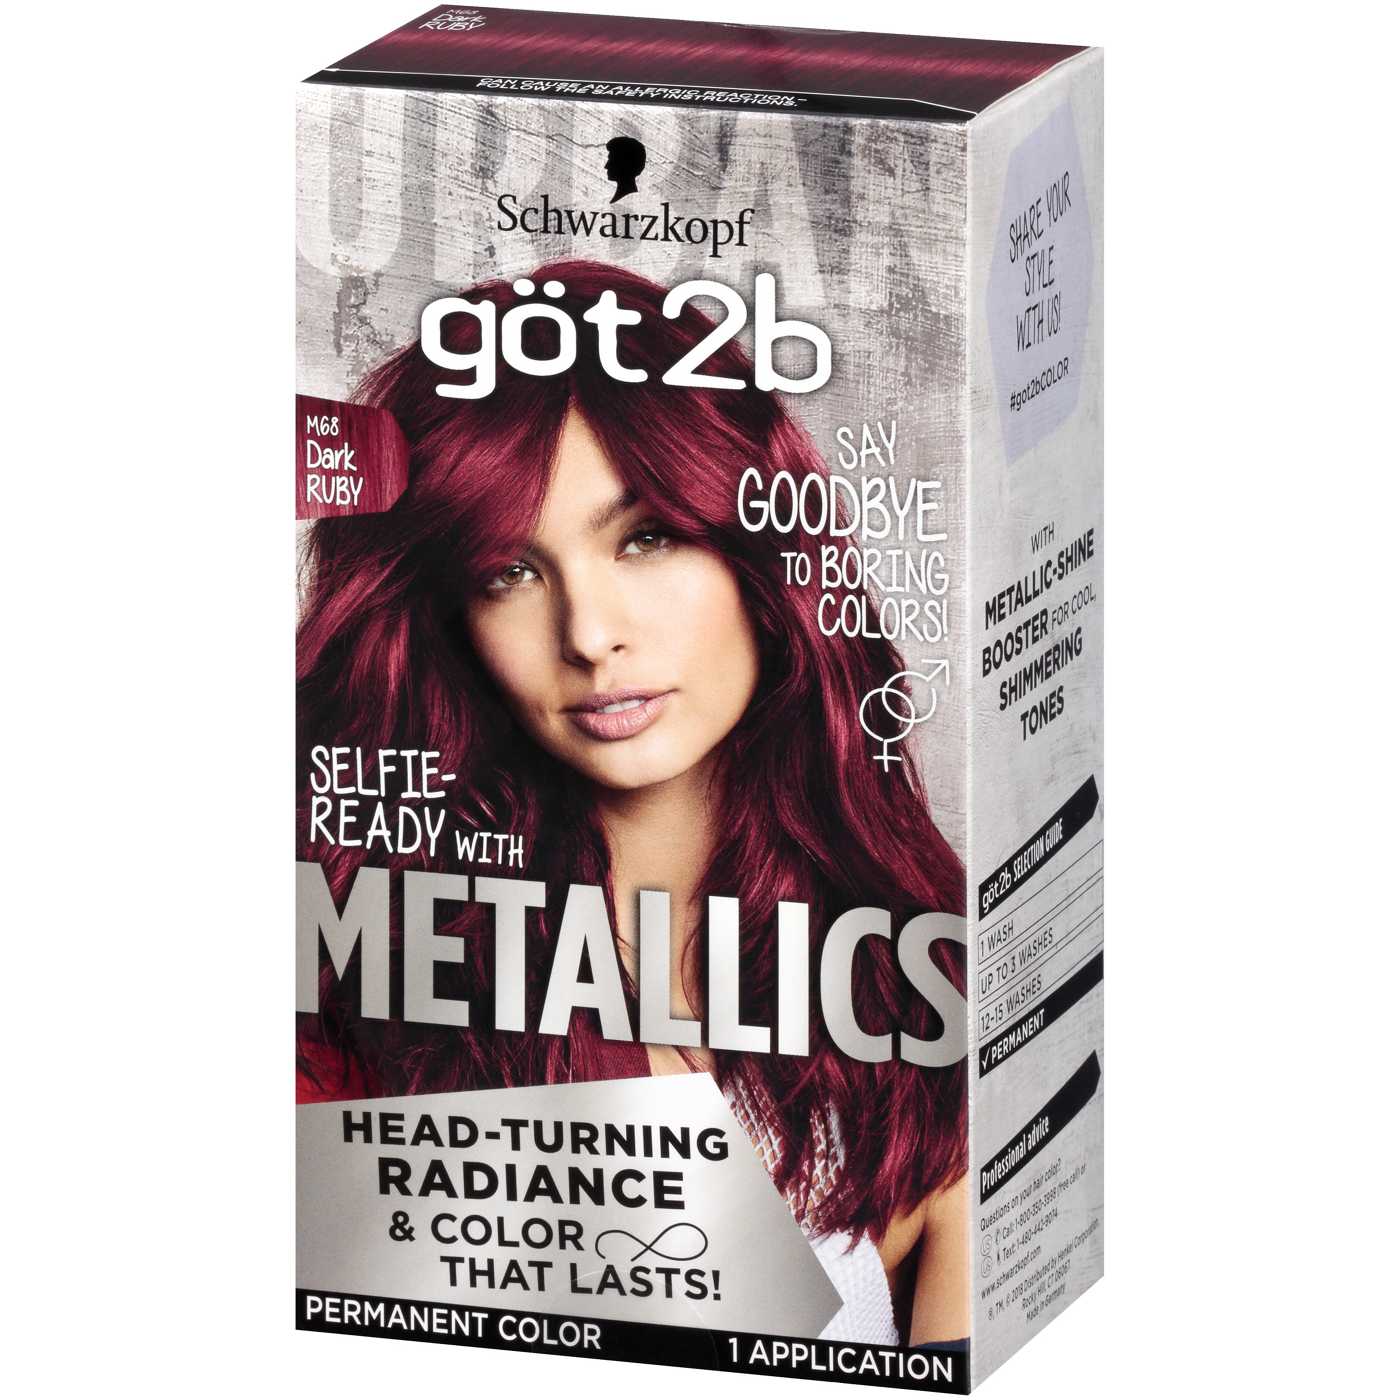 Got2b Metallics Permanent Hair Color, M68 Dark Ruby; image 3 of 4